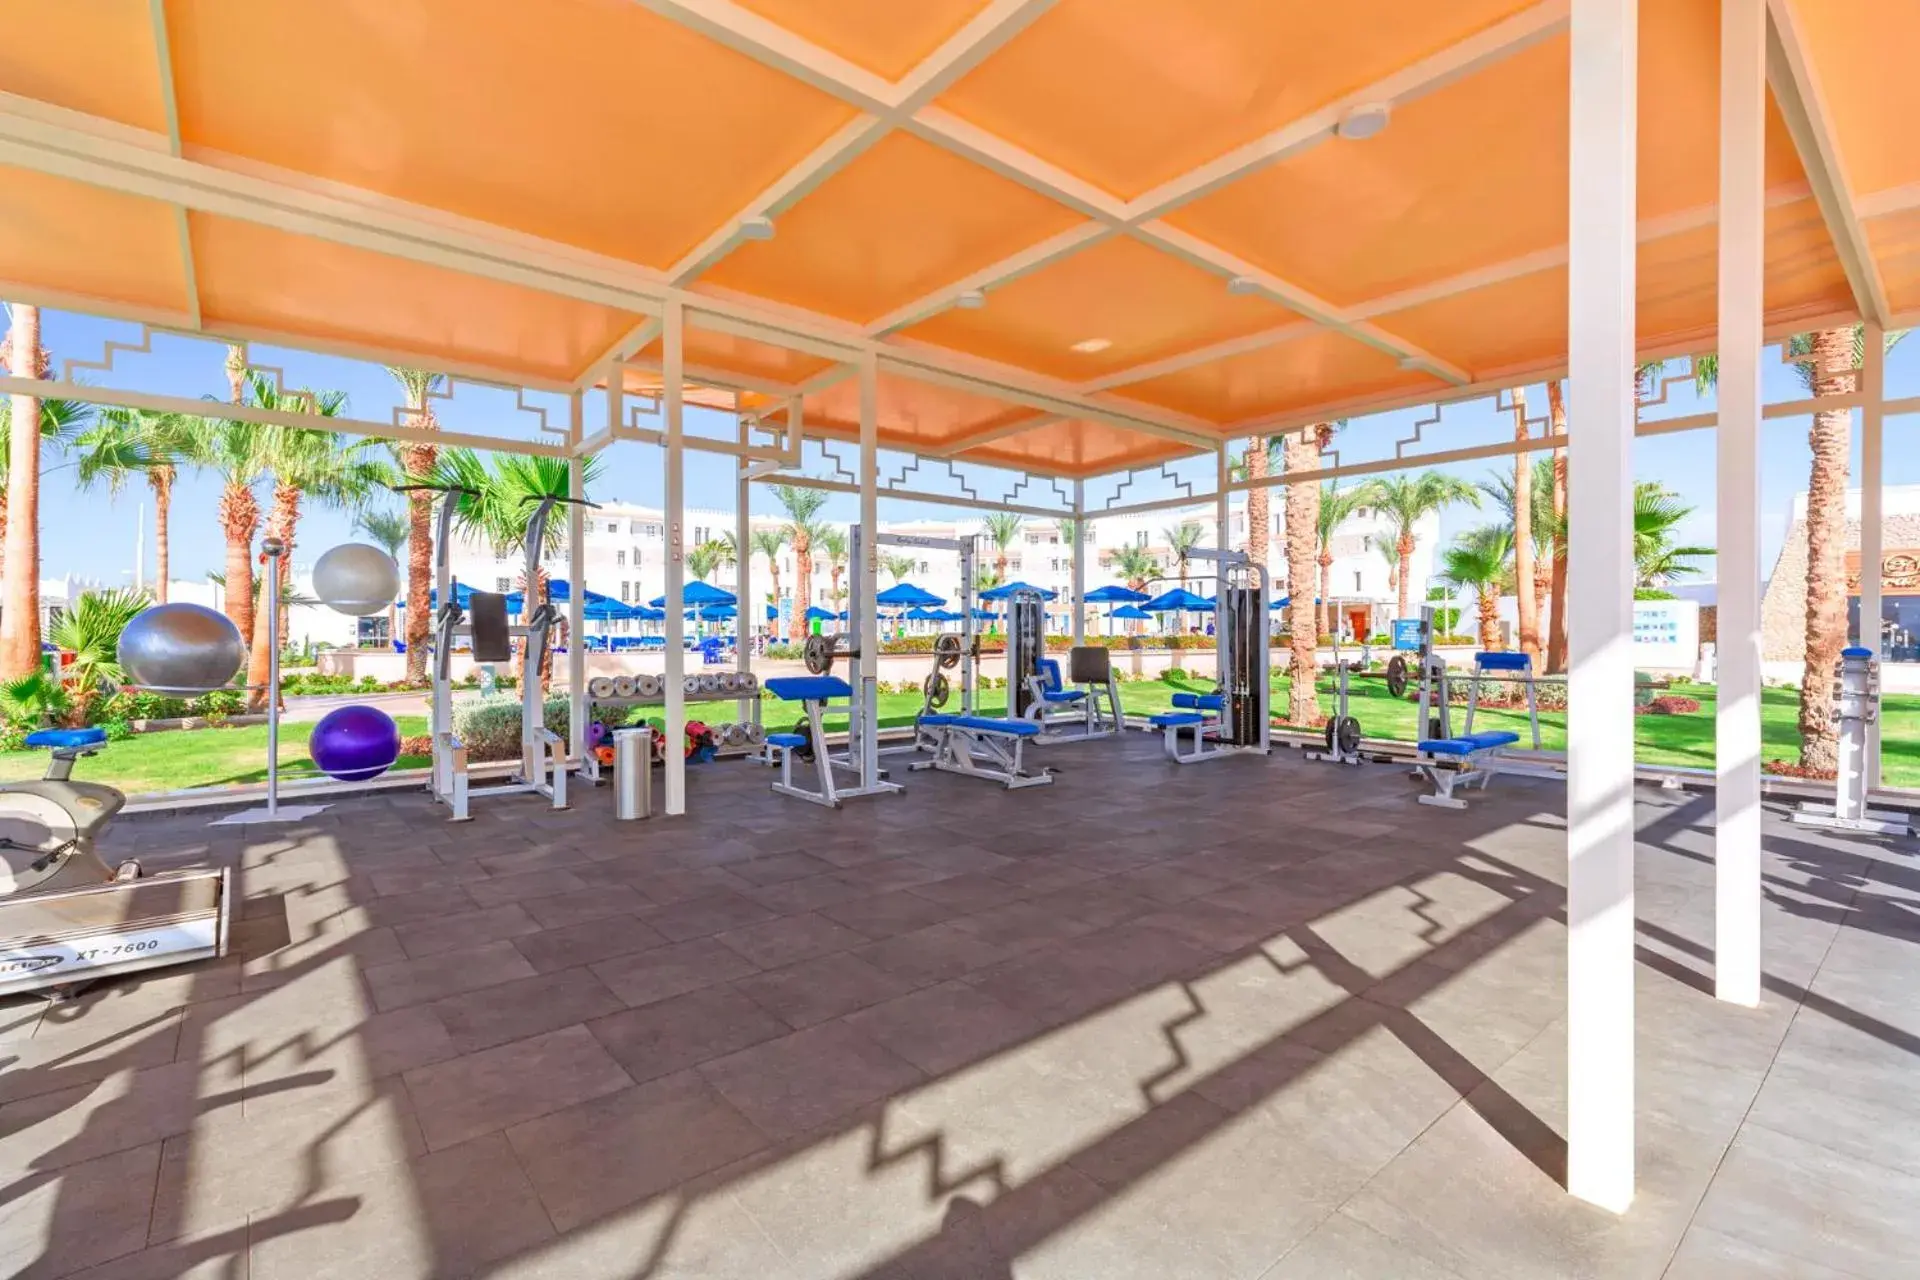 Fitness centre/facilities, Fitness Center/Facilities in Albatros Sharm Resort - By Pickalbatros